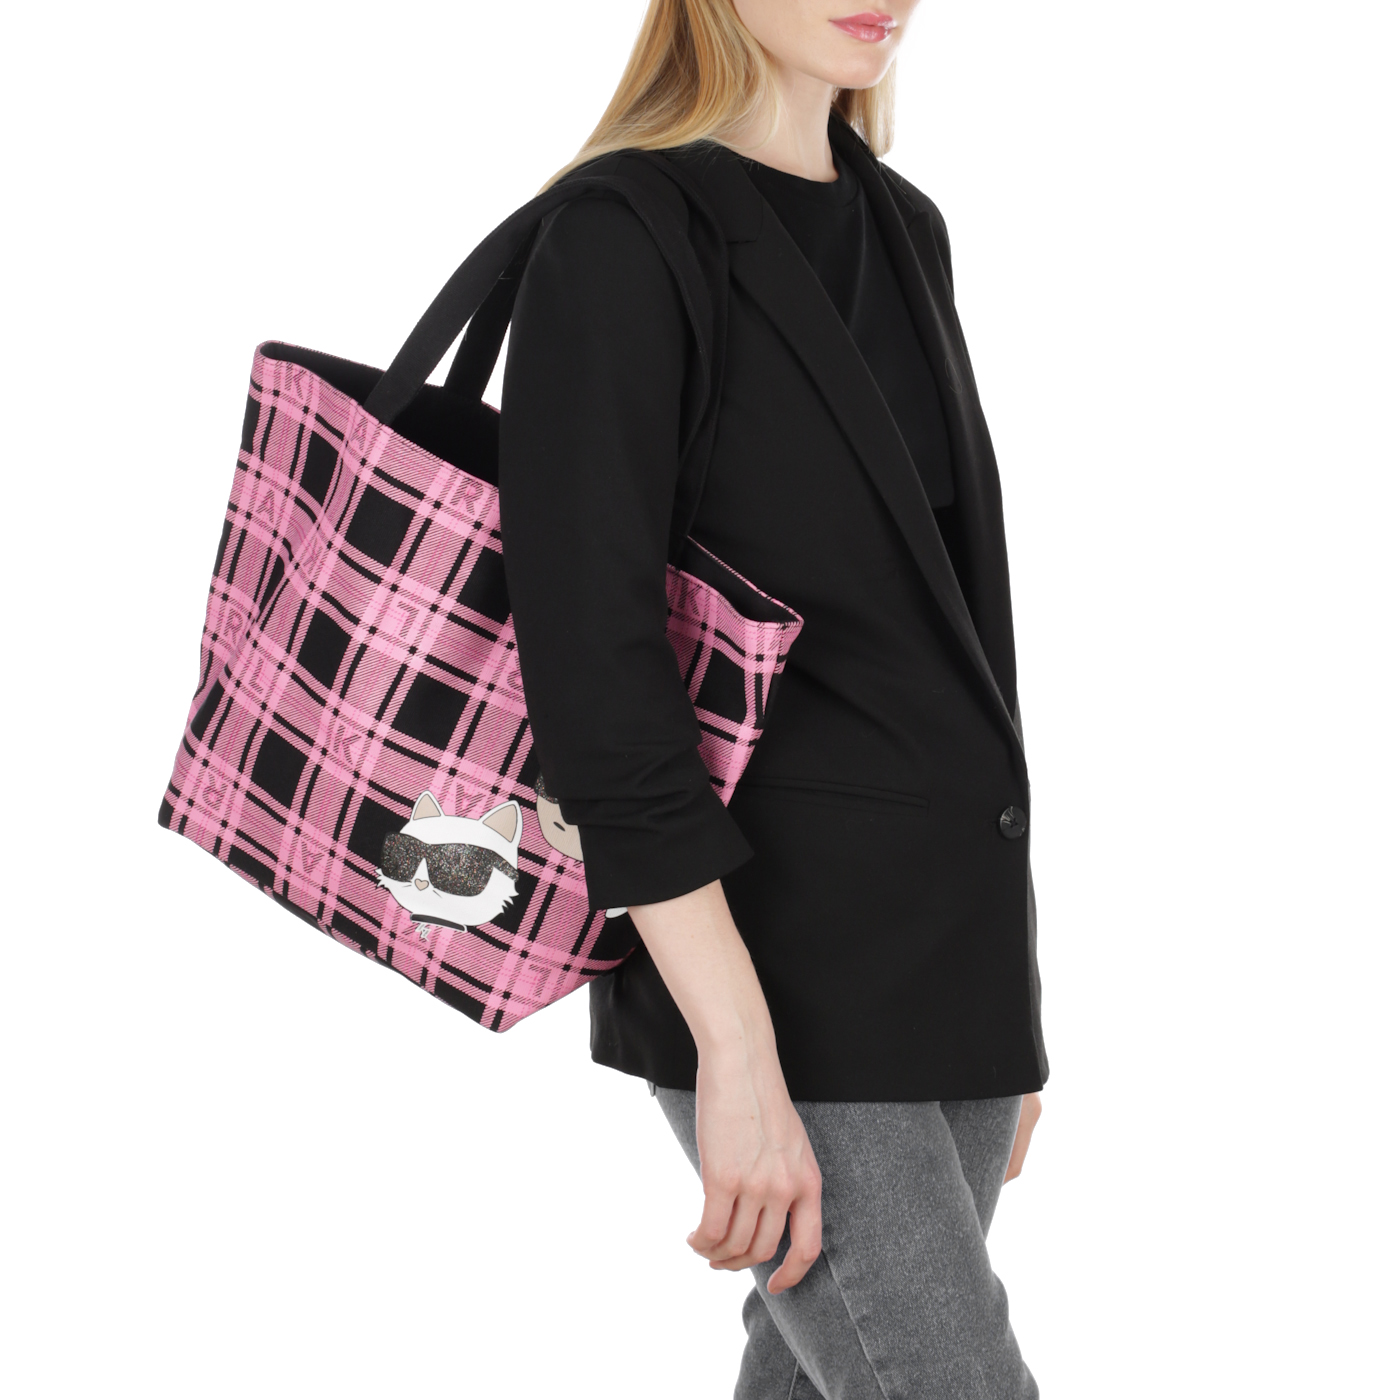 Текстильная сумка Karl Lagerfeld Ikonik 2.0